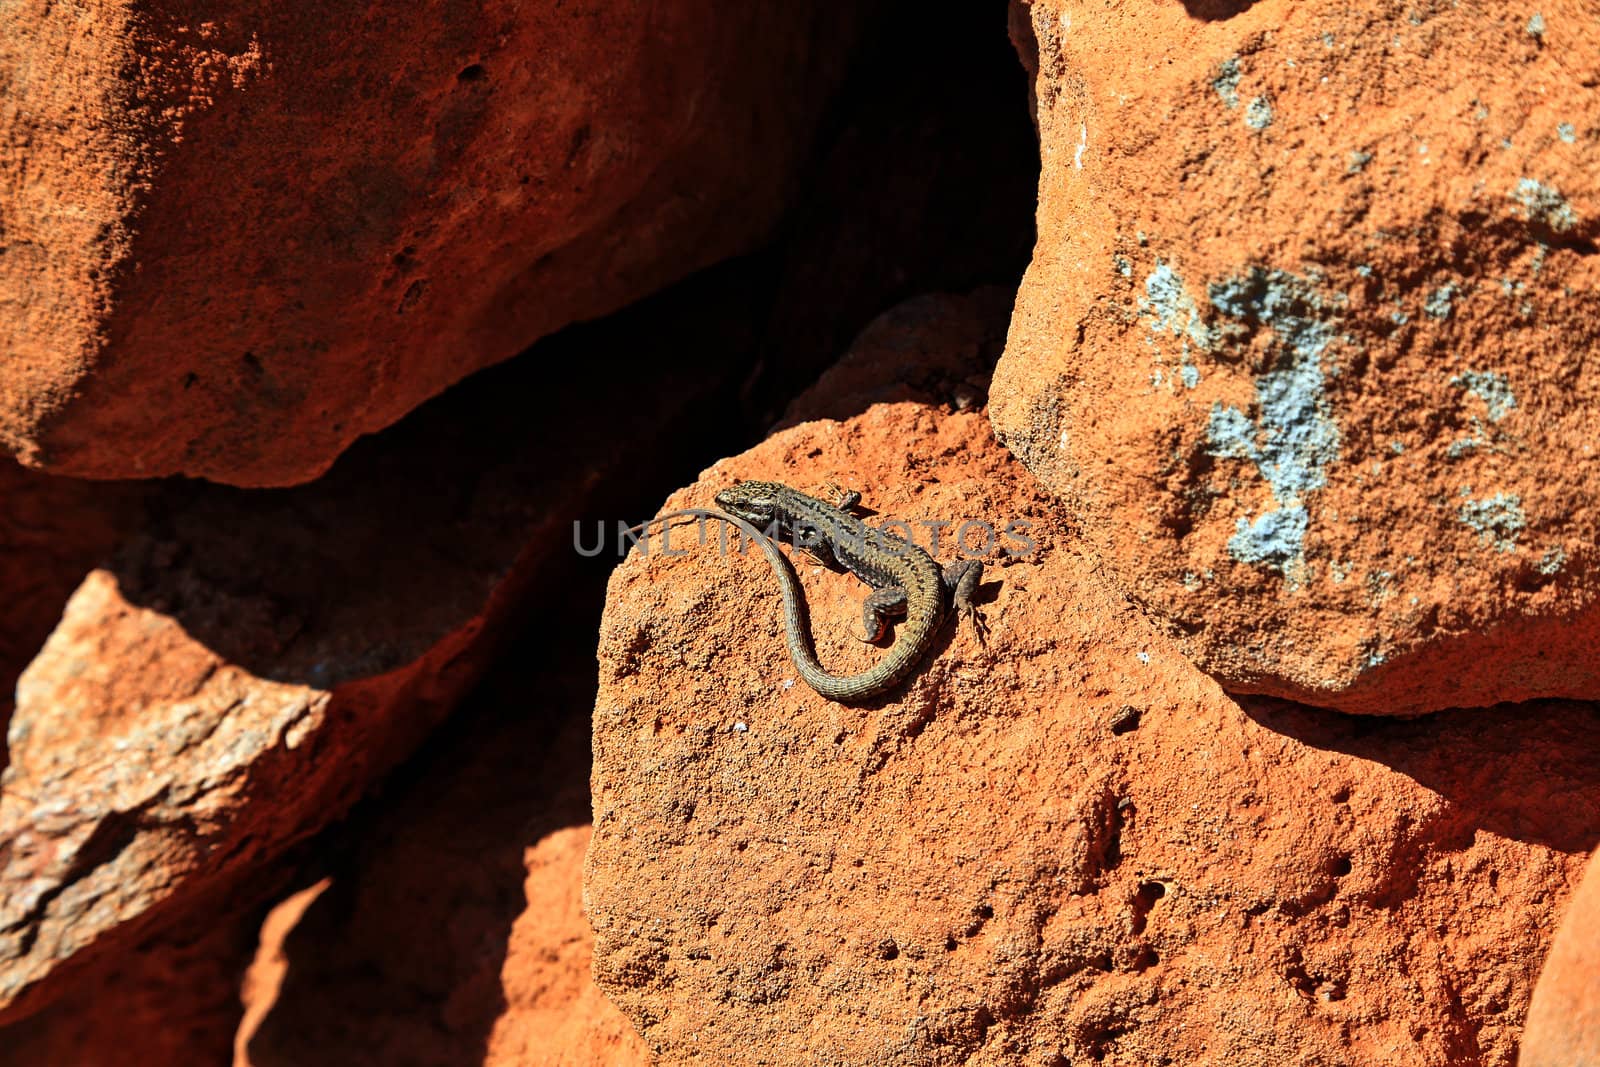 A lizard sunbathing on the rocks